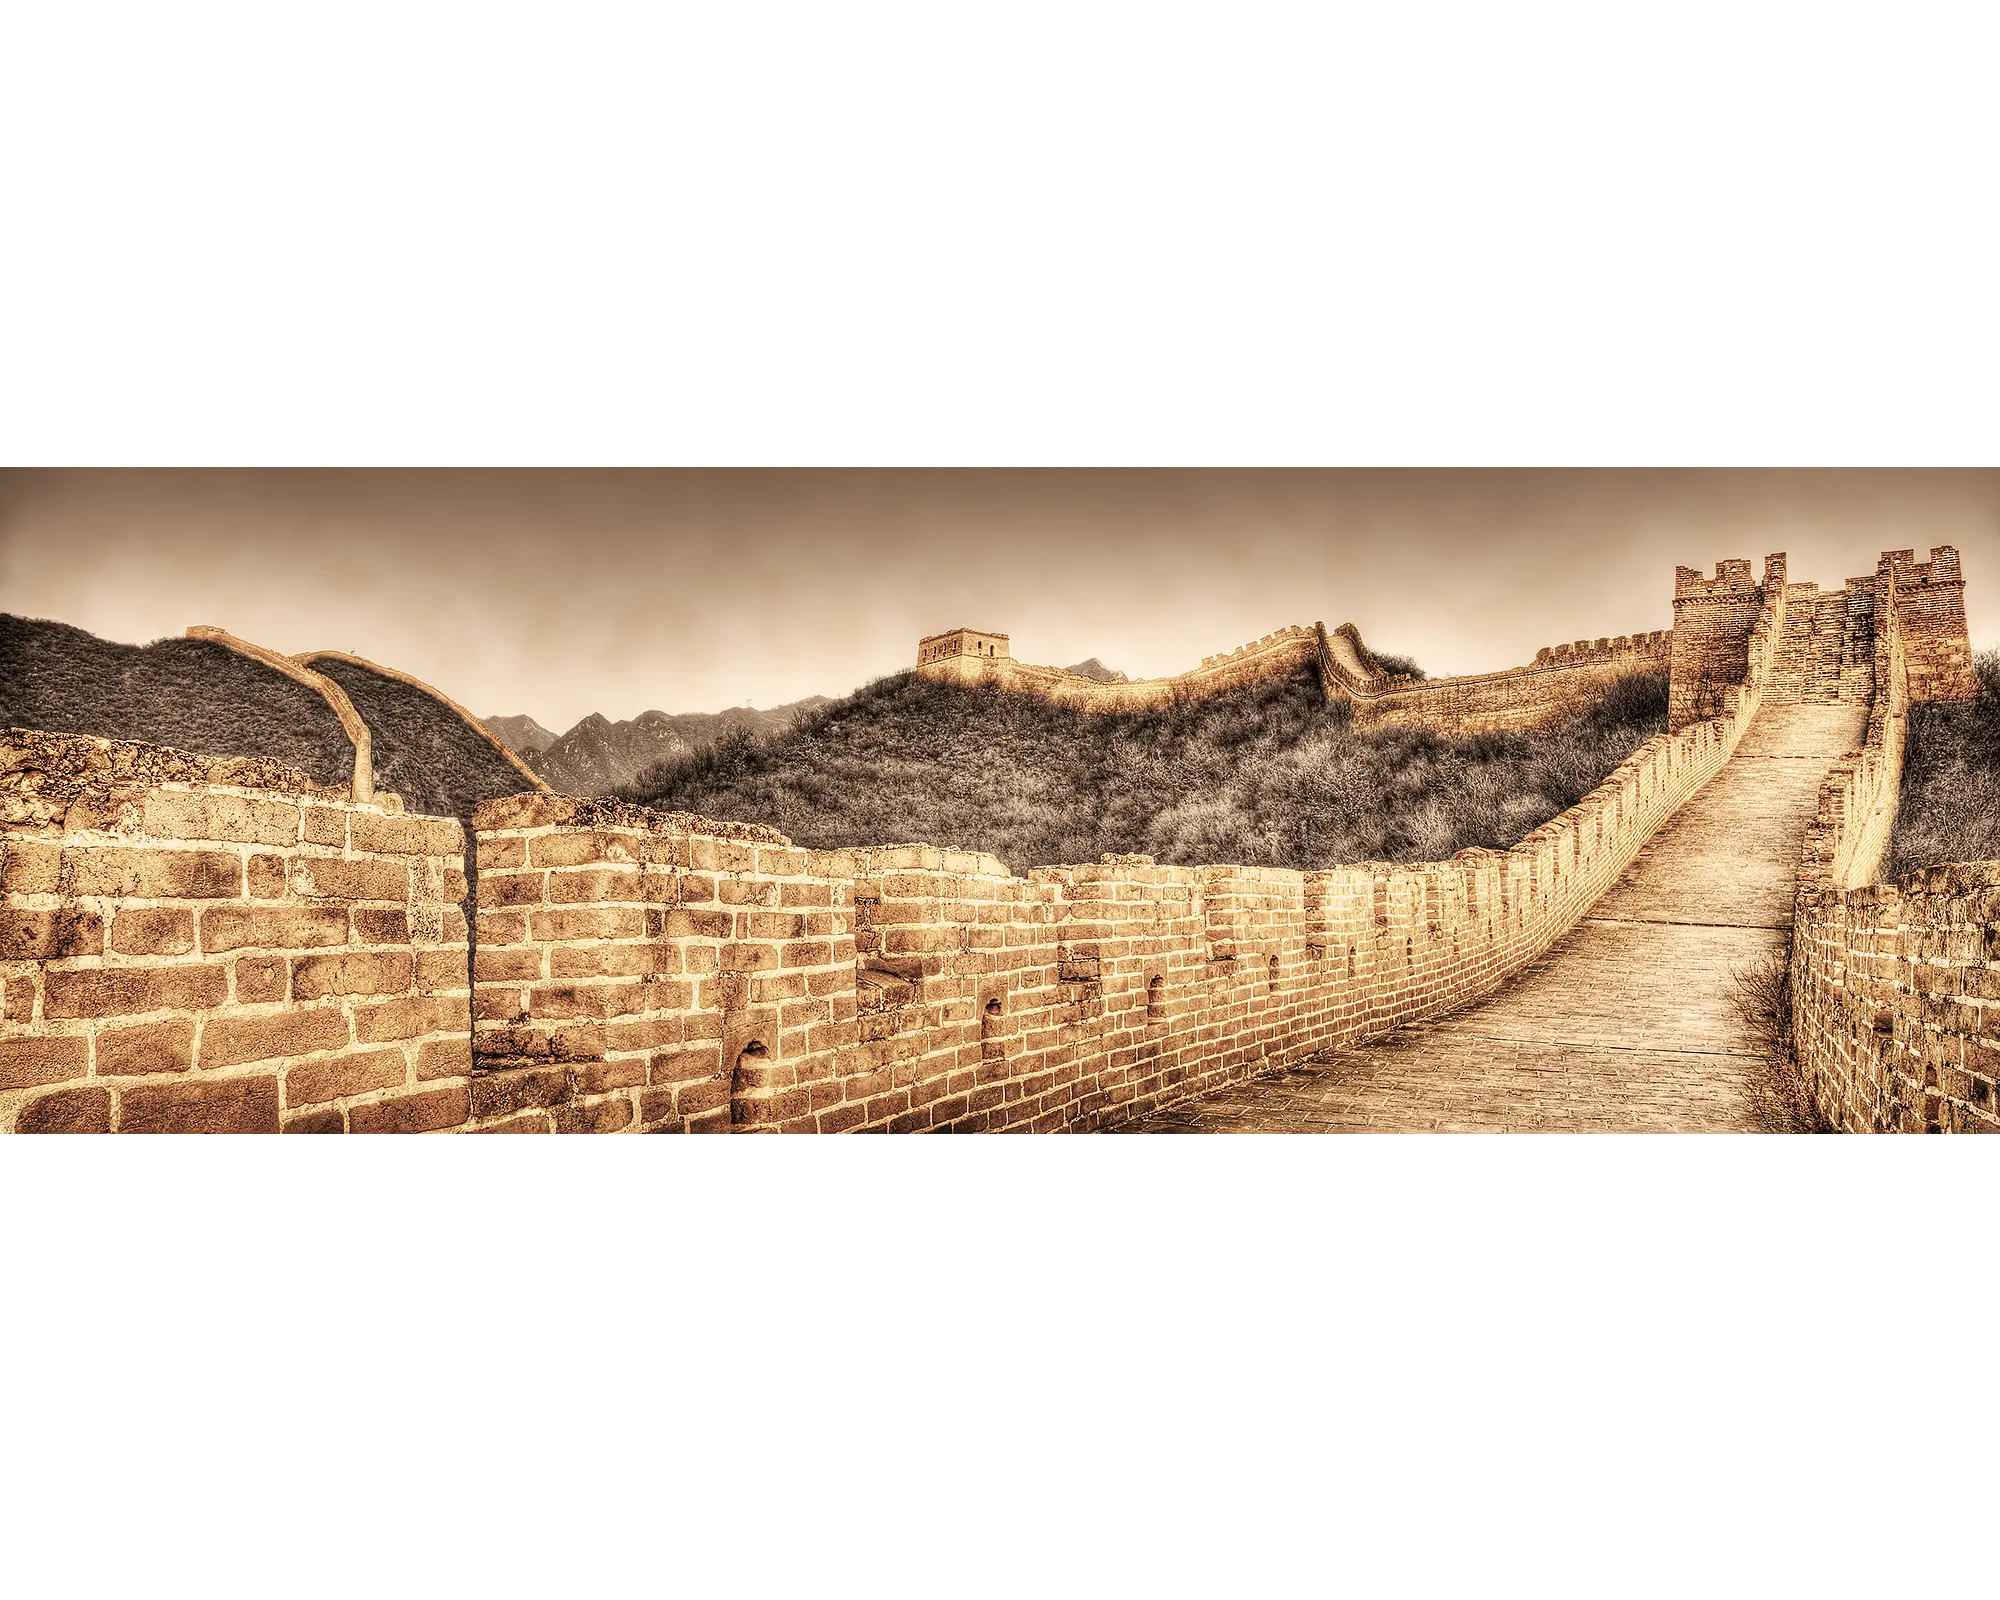 Ancient Wall - Great Wall Of China.